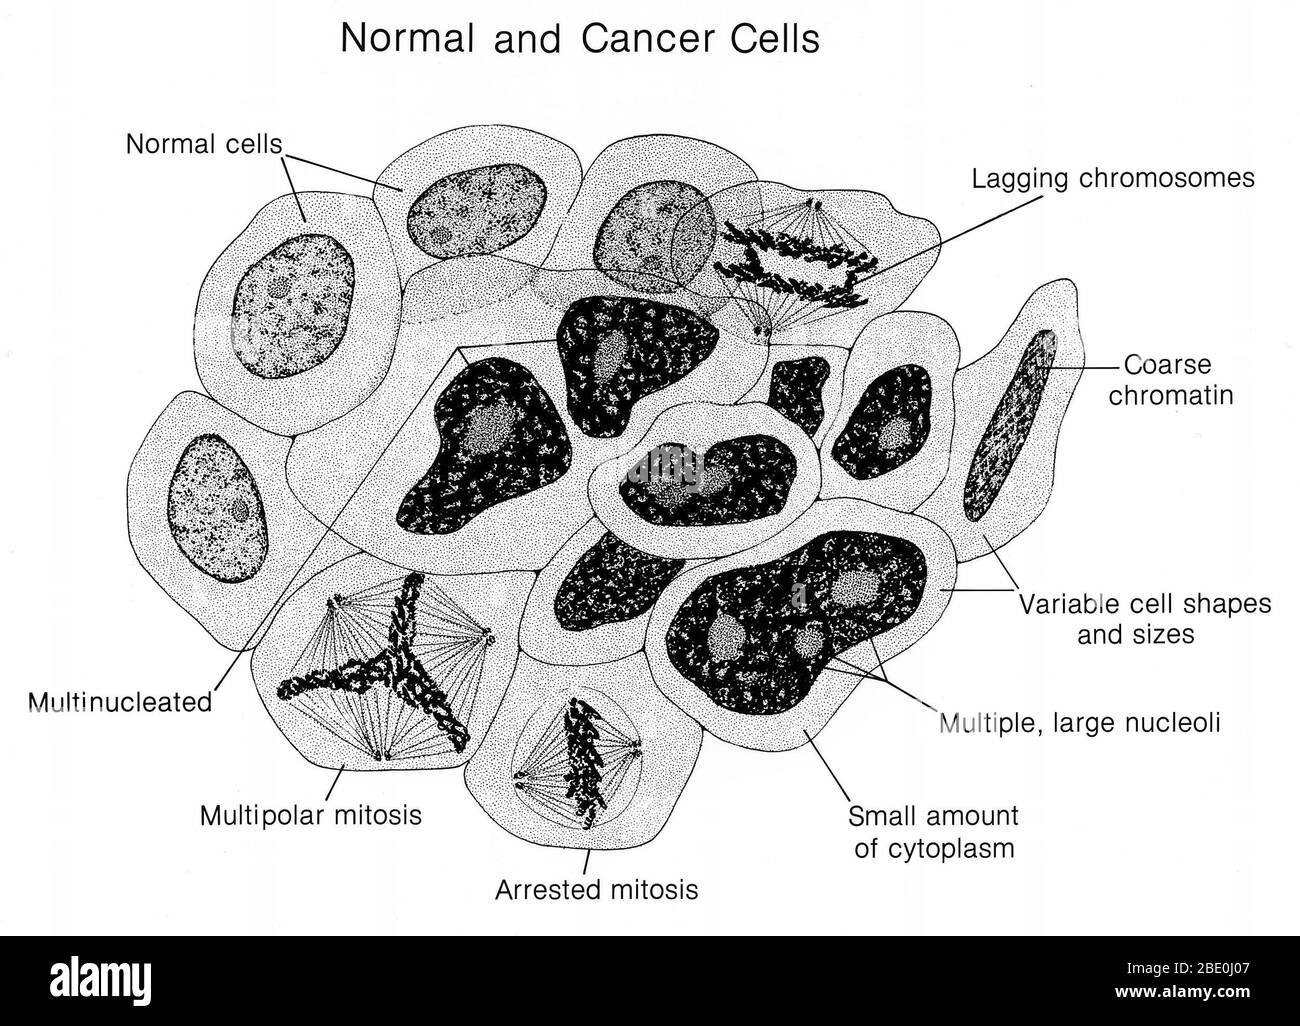 Illustrazione delle cellule normali e tumorali affiancate. Vengono identificate le caratteristiche normali e cancerose. Il cancro, noto anche come tumore maligno o neoplasia maligna, è un gruppo di malattie che comportano una crescita cellulare anormale con il potenziale di invadere o diffondersi ad altre parti del corpo. Non tutti i tumori sono cancerosi; i tumori benigni non si diffondono in altre parti del corpo. I segni e i sintomi possibili includono: Una nuova grumo, sanguinamento anormale, tosse prolungata, perdita di peso inspiegabile, e un cambiamento nei movimenti intestinali tra gli altri. Anche se questi sintomi possono indicare il cancro, possono anche verificarsi Foto Stock